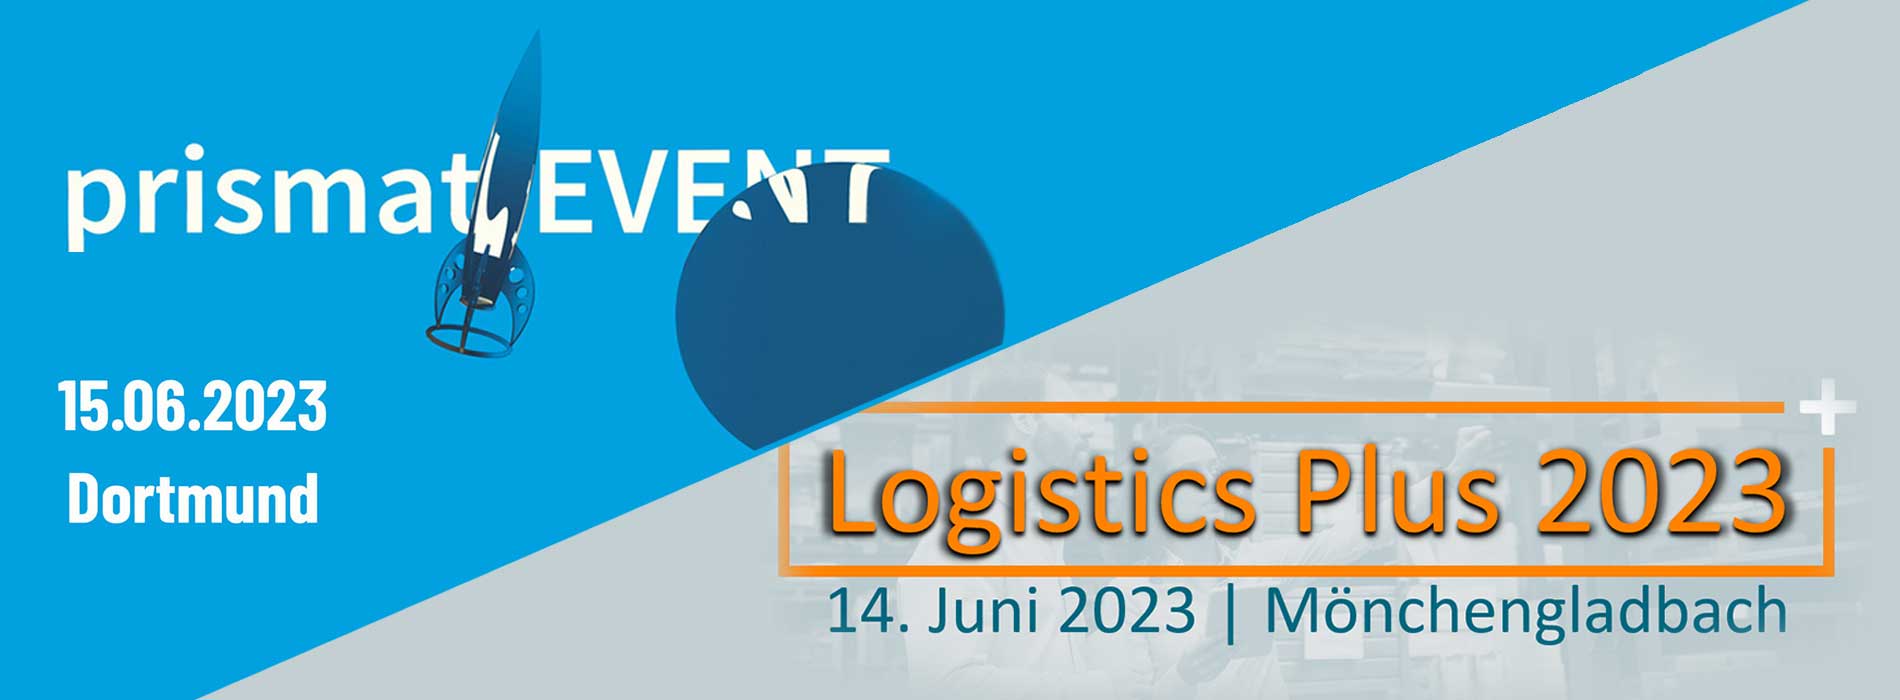 Logistik-Veranstaltungen im Juni 2023